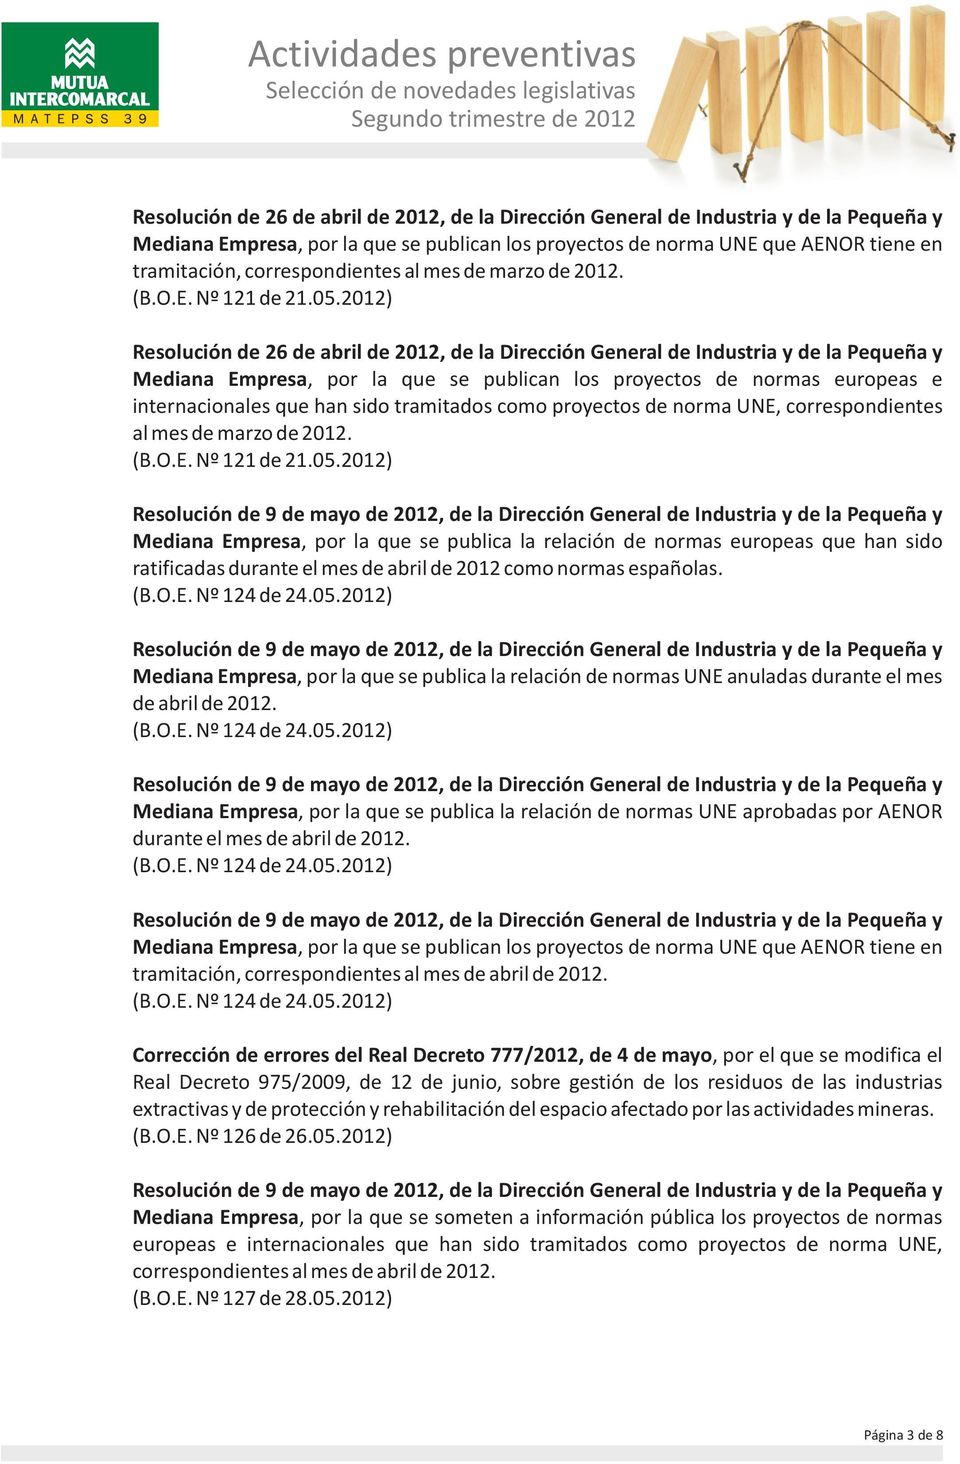 Resolución de 26 de abril de 2012, de la Dirección General de Industria y de la Pequeña y Mediana Empresa, por la que se publican los proyectos de normas europeas e internacionales que han sido